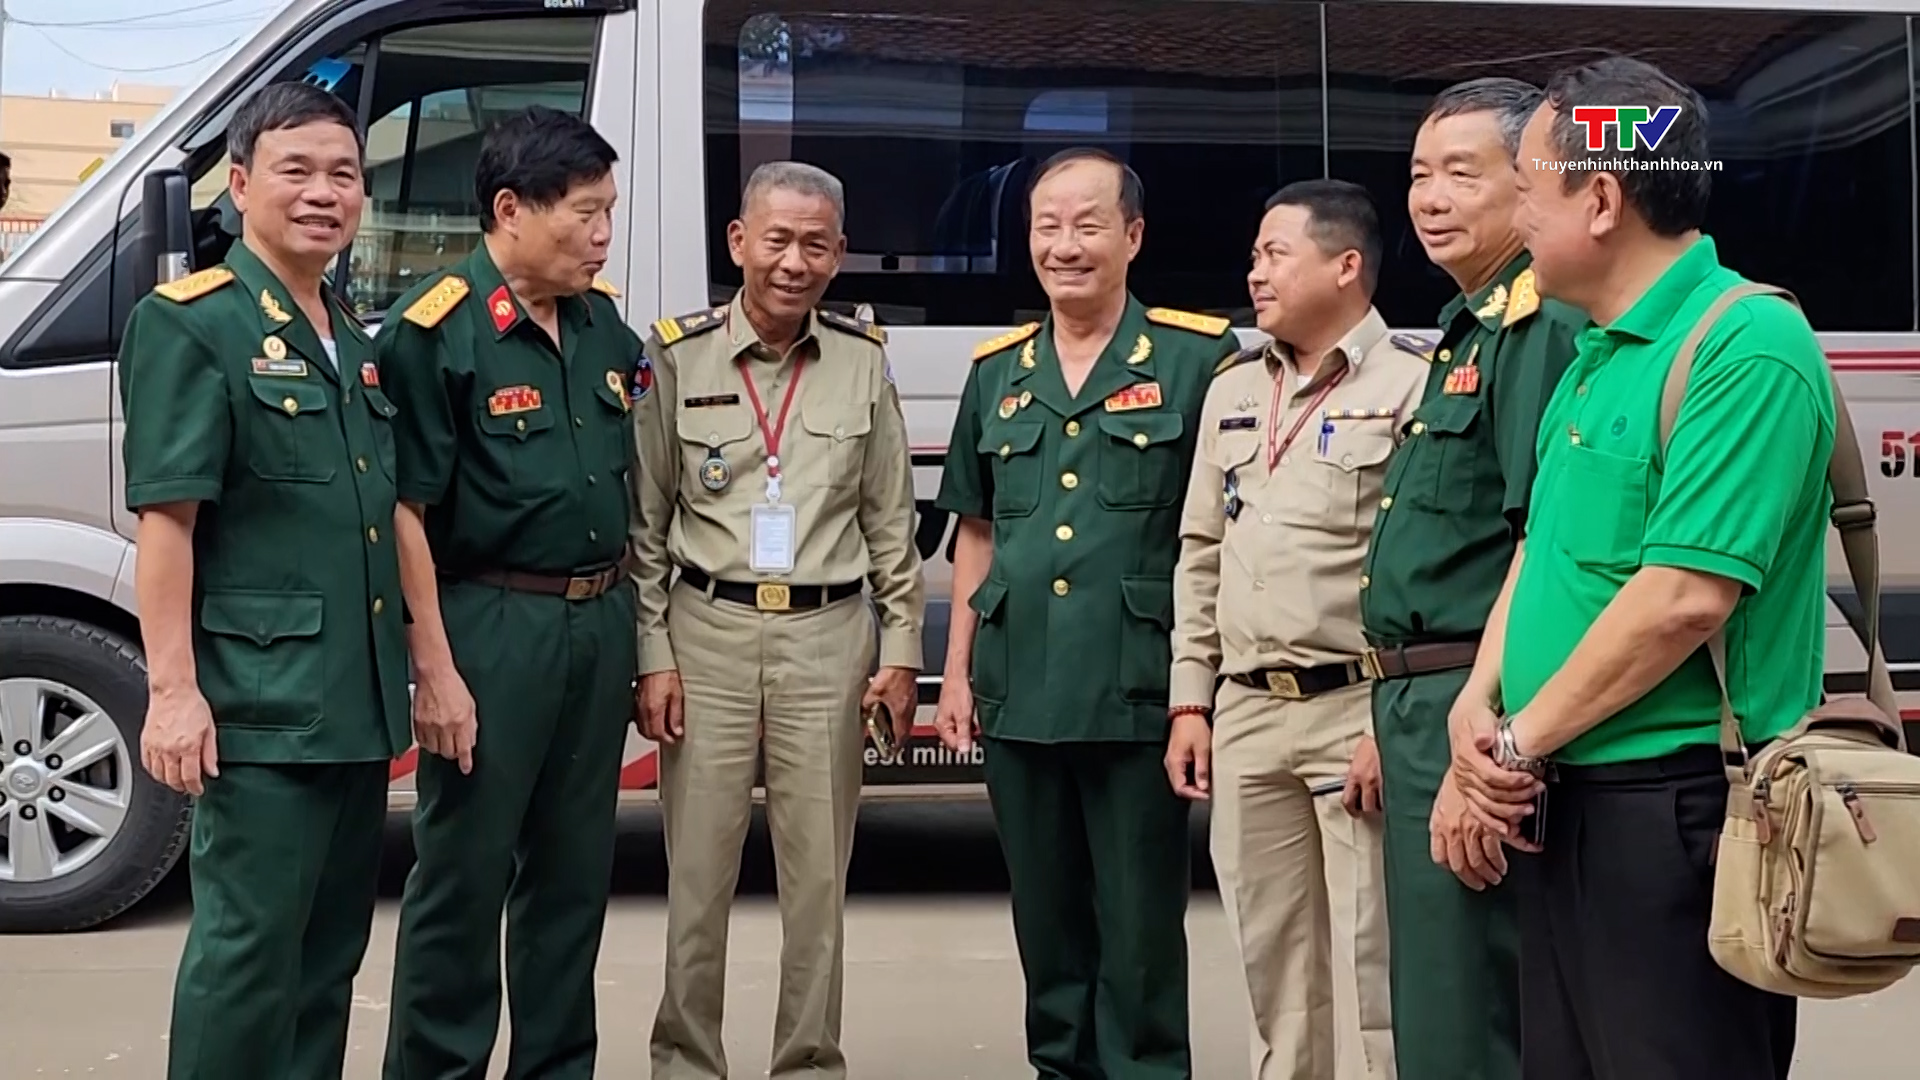 Cầu nối thúc đẩy tình đoàn kết Nhân dân hai nước Việt Nam - Campuchia- Ảnh 6.